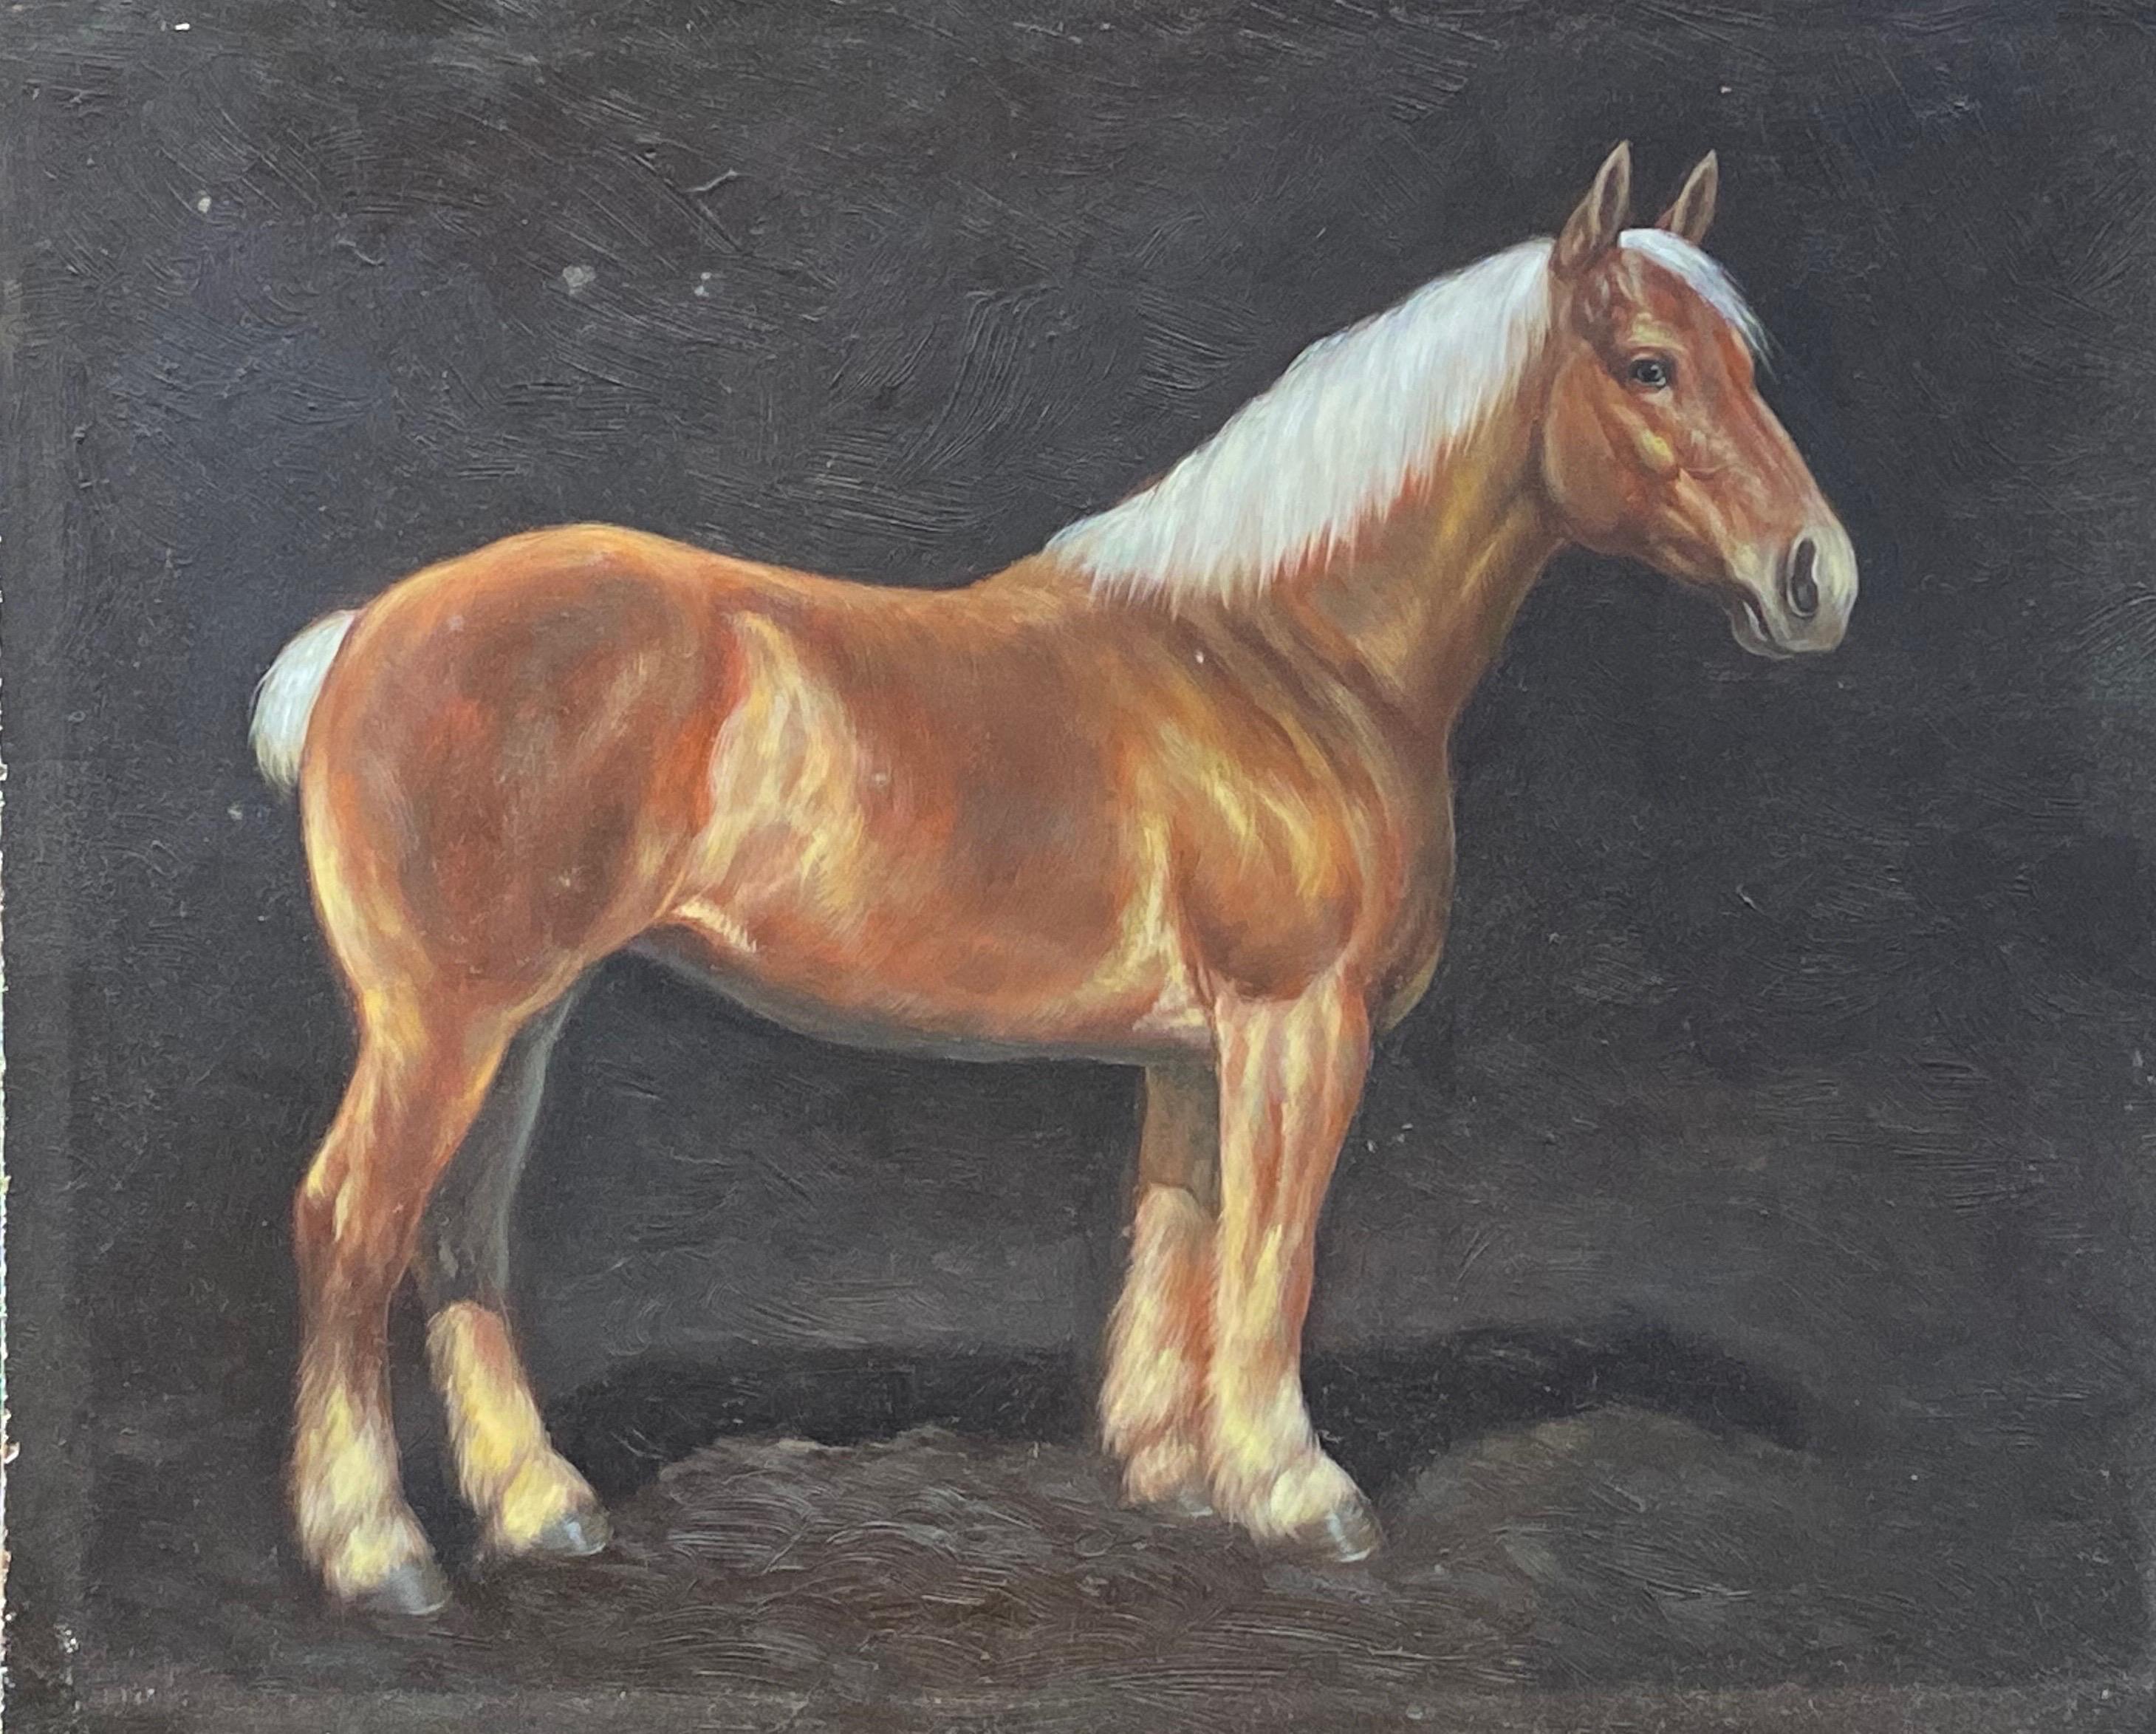 Animal Painting British Sporting Art - Peinture à l'huile britannique d'un portrait de cheval équestre - Cheval debout